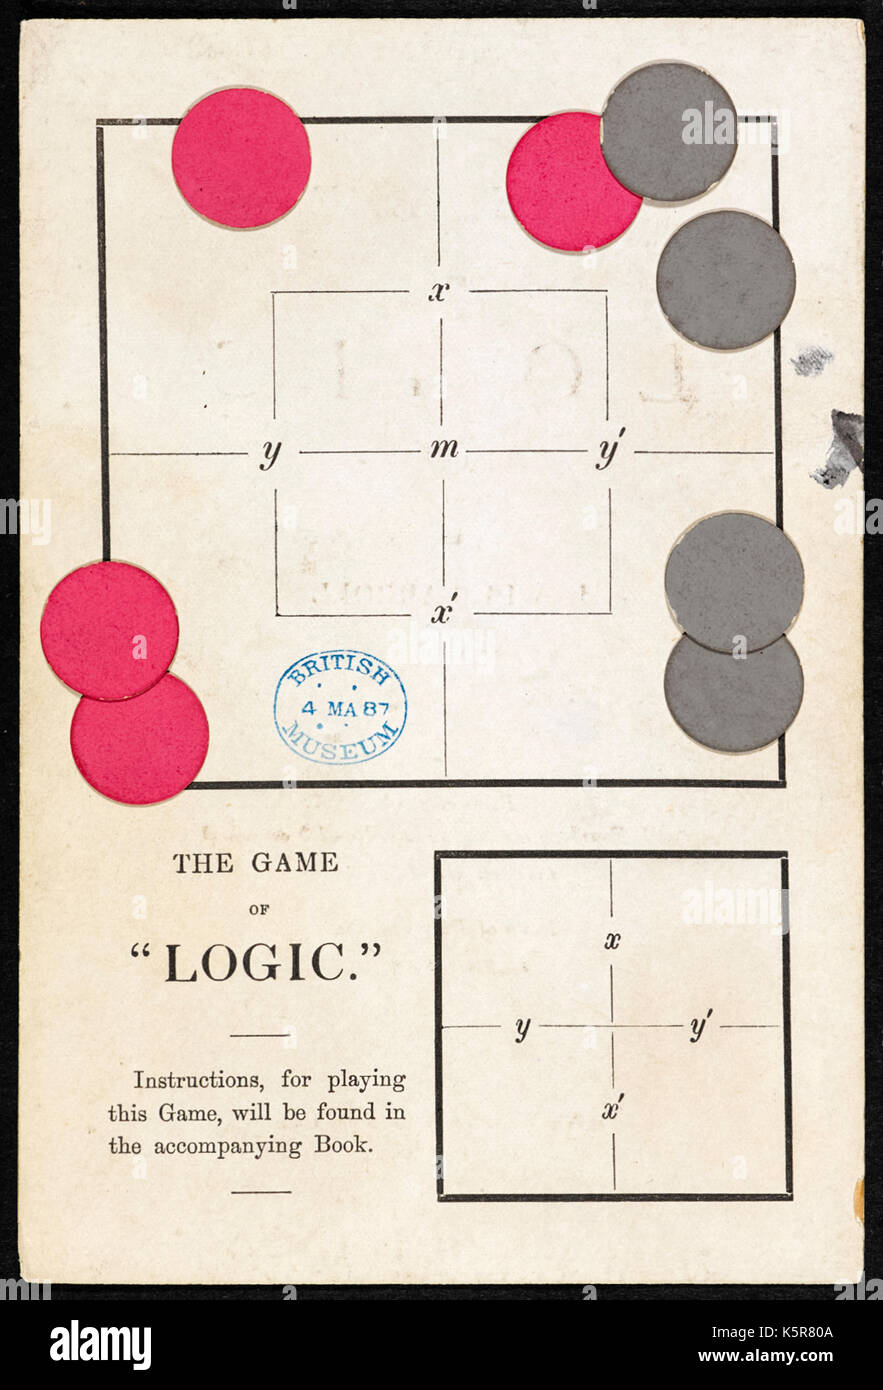 "Das Spiel der Logik' von Lewis Caroll, das Pseudonym von Charles Lutwidge Dodgson (1832-1898) im Jahr 1887. Dodgson war Mathematiker und dieses Spiel herausgefordert "Spieler" verschiedene logische Aussagen zu bezeichnen. Foto von Board und Tokens. Weitere Informationen finden Sie unten. Stockfoto